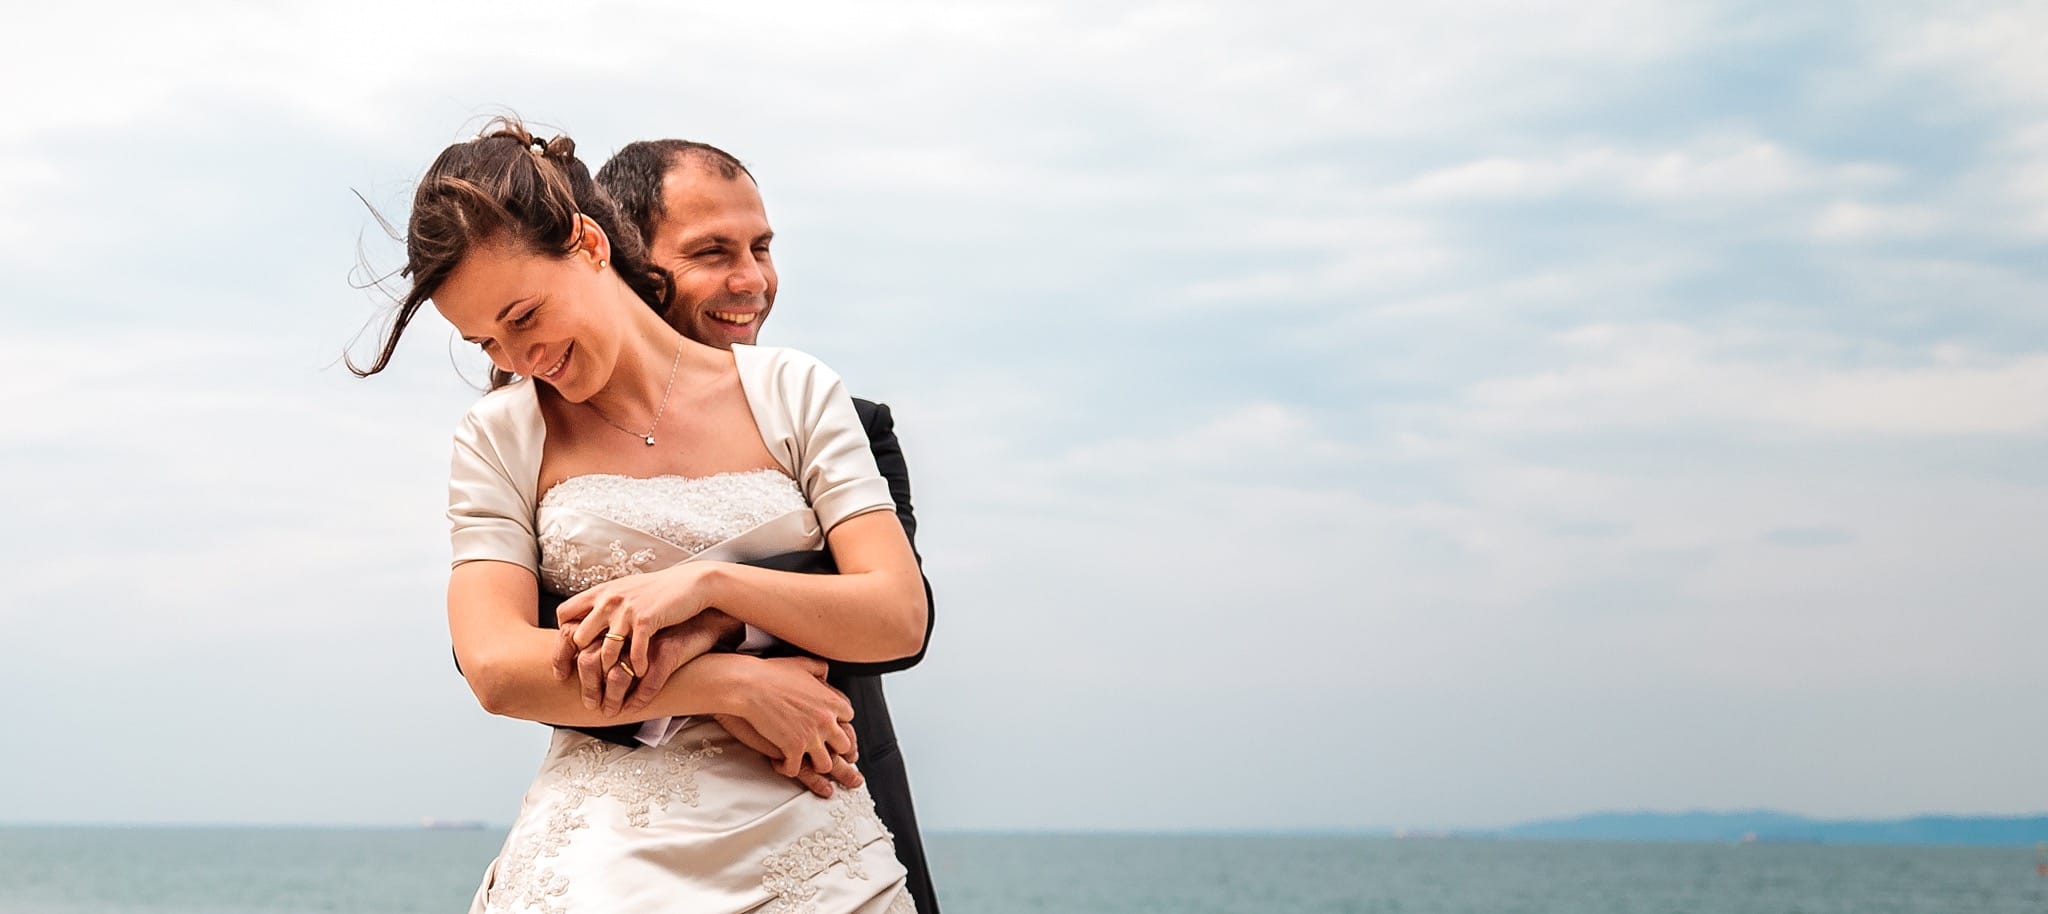 Nadia Michele matrimonio San Giusto Trieste Mulin Koper Slovenia ritratti sposi mare costa spiaggia